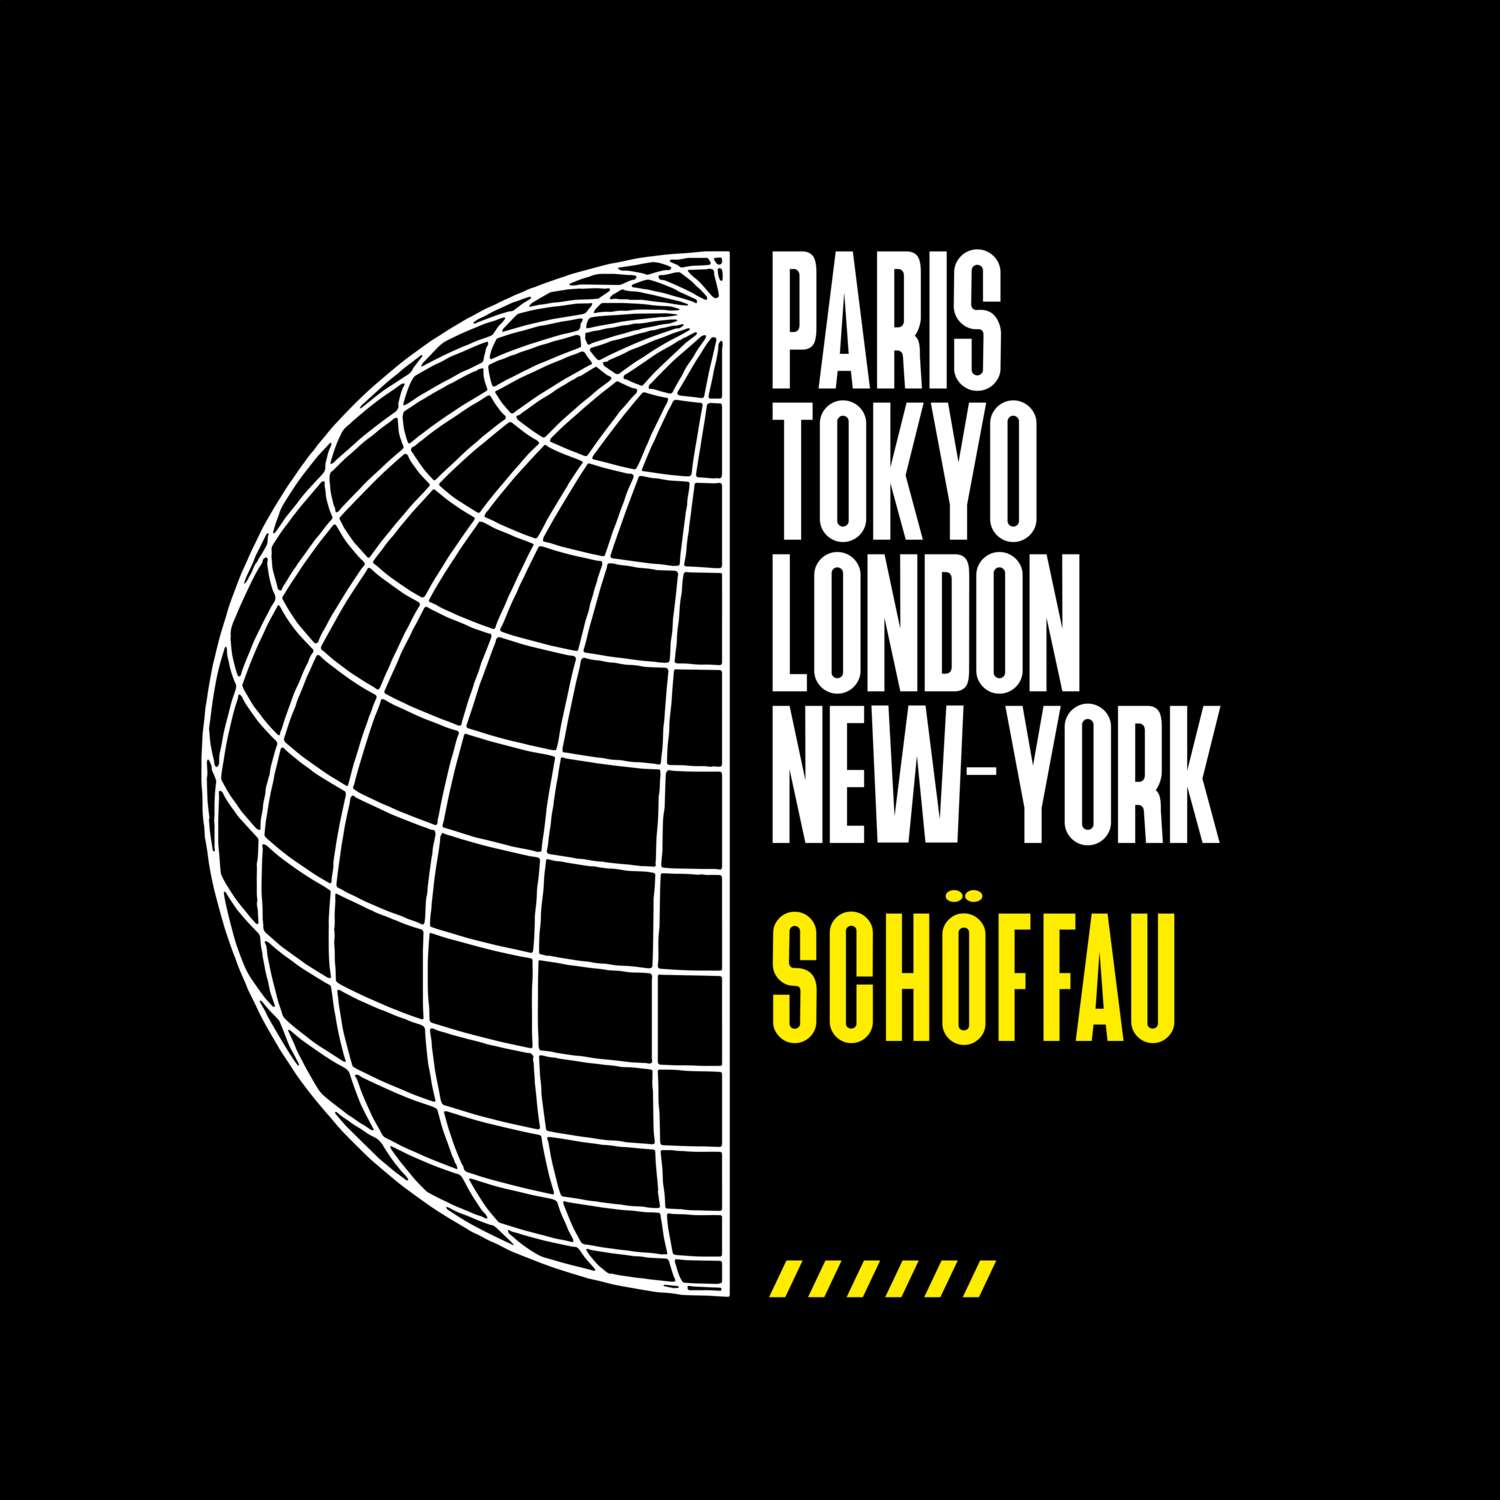 Schöffau T-Shirt »Paris Tokyo London«